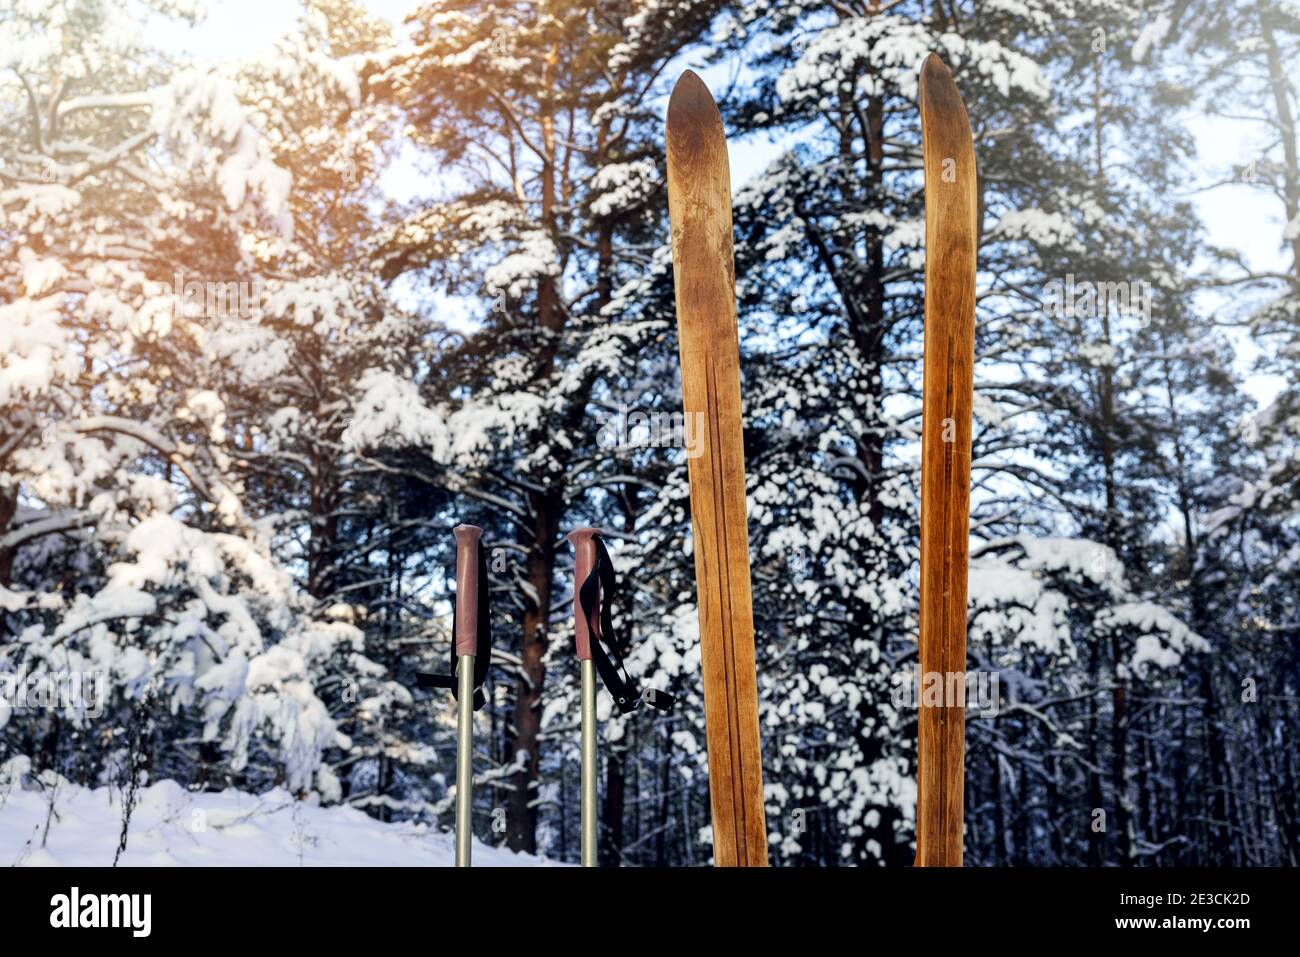 vieux skis de fond en bois avec bâtons de ski debout dans la neige dans la forêt enneigée le jour d'hiver ensoleillé. ski de randonnée Banque D'Images